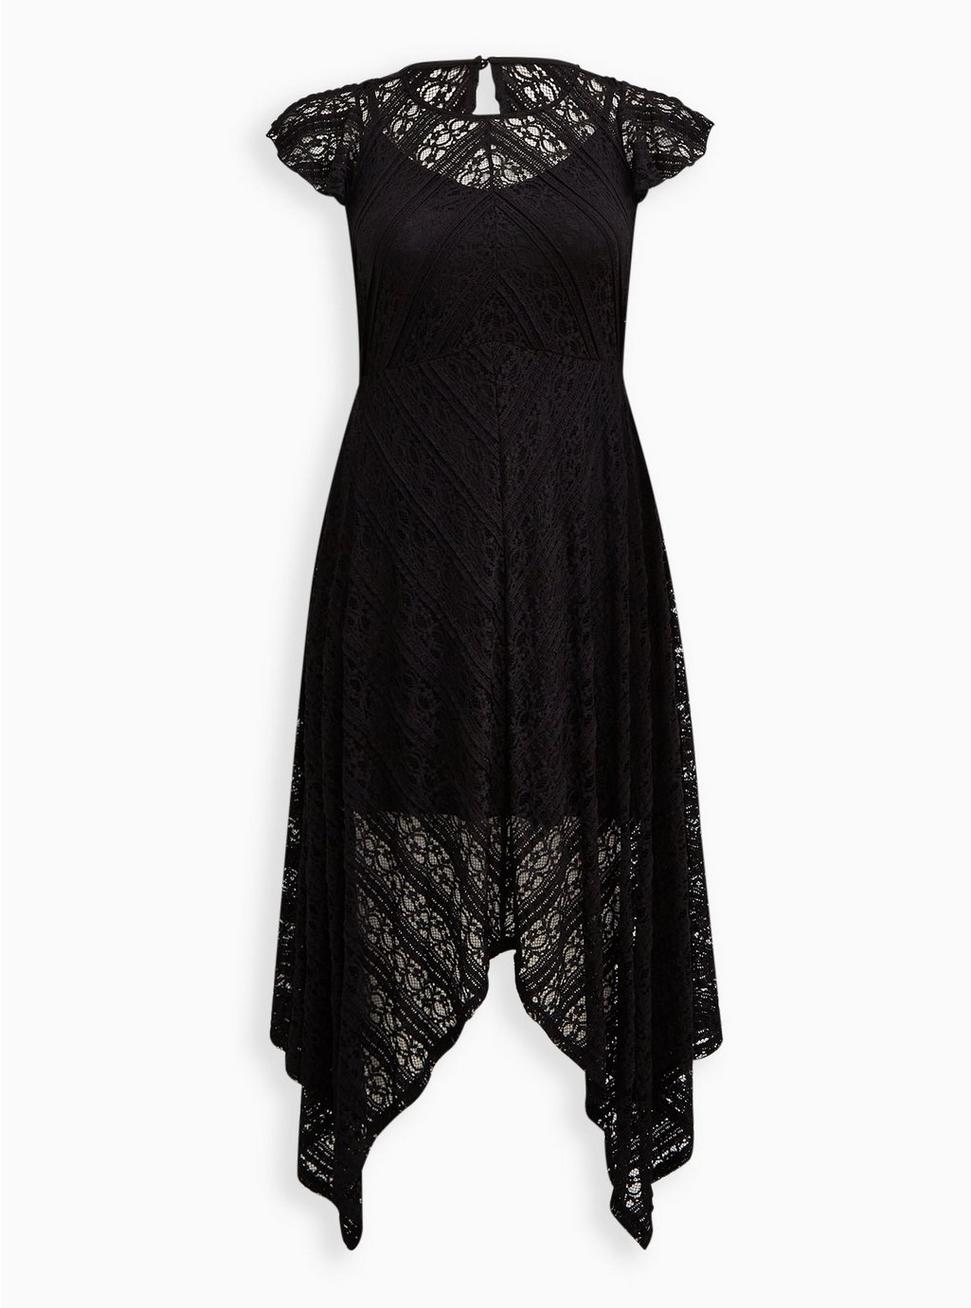 High Neck Handkerchief Midi Dress - Lace Black, DEEP BLACK, hi-res